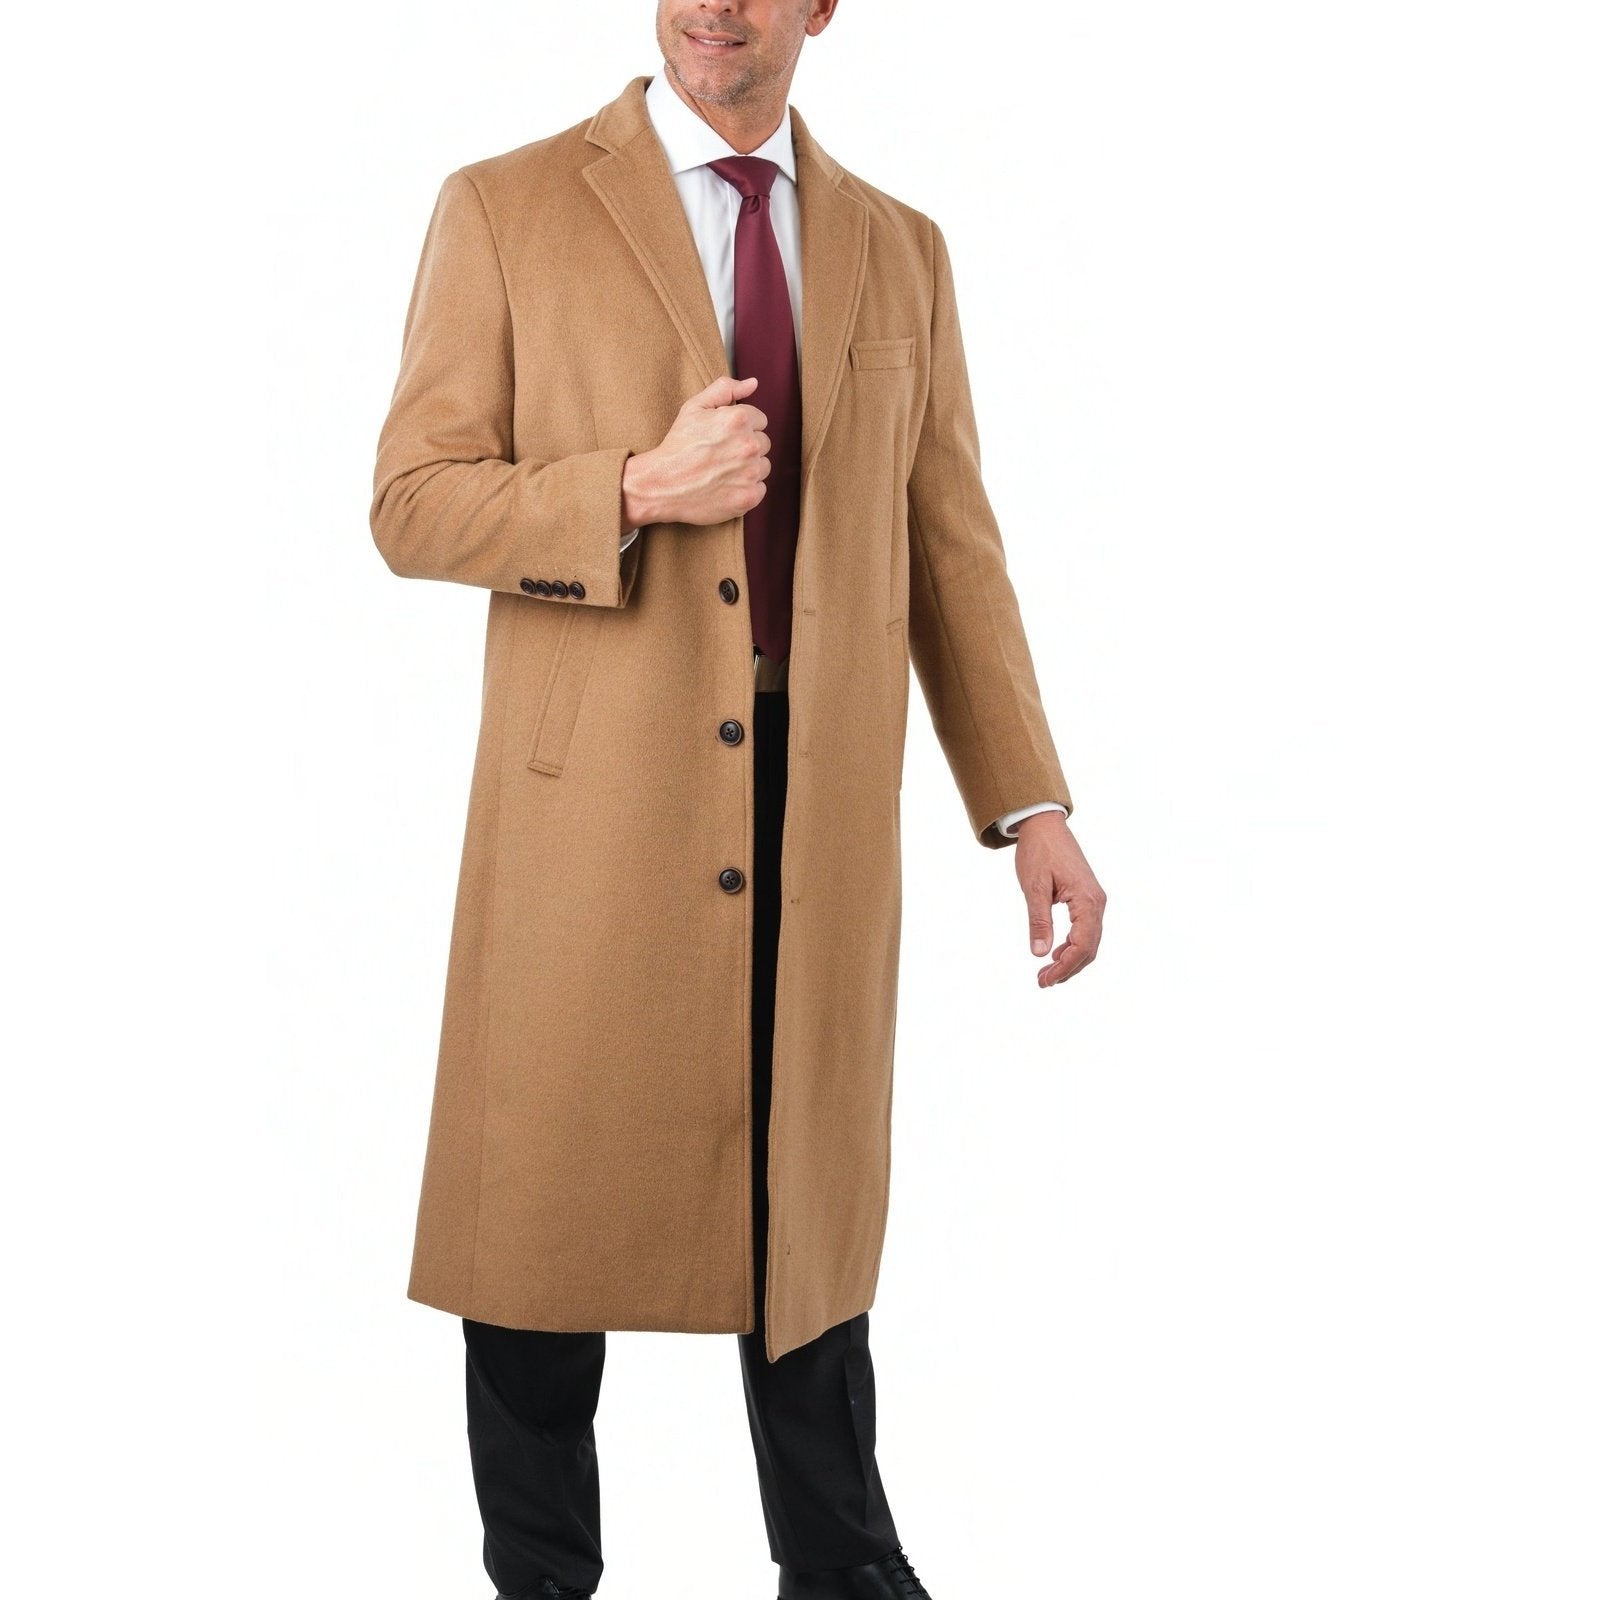 Shop Arthur Black Tan Classic Fit Coat | The Suit Depot